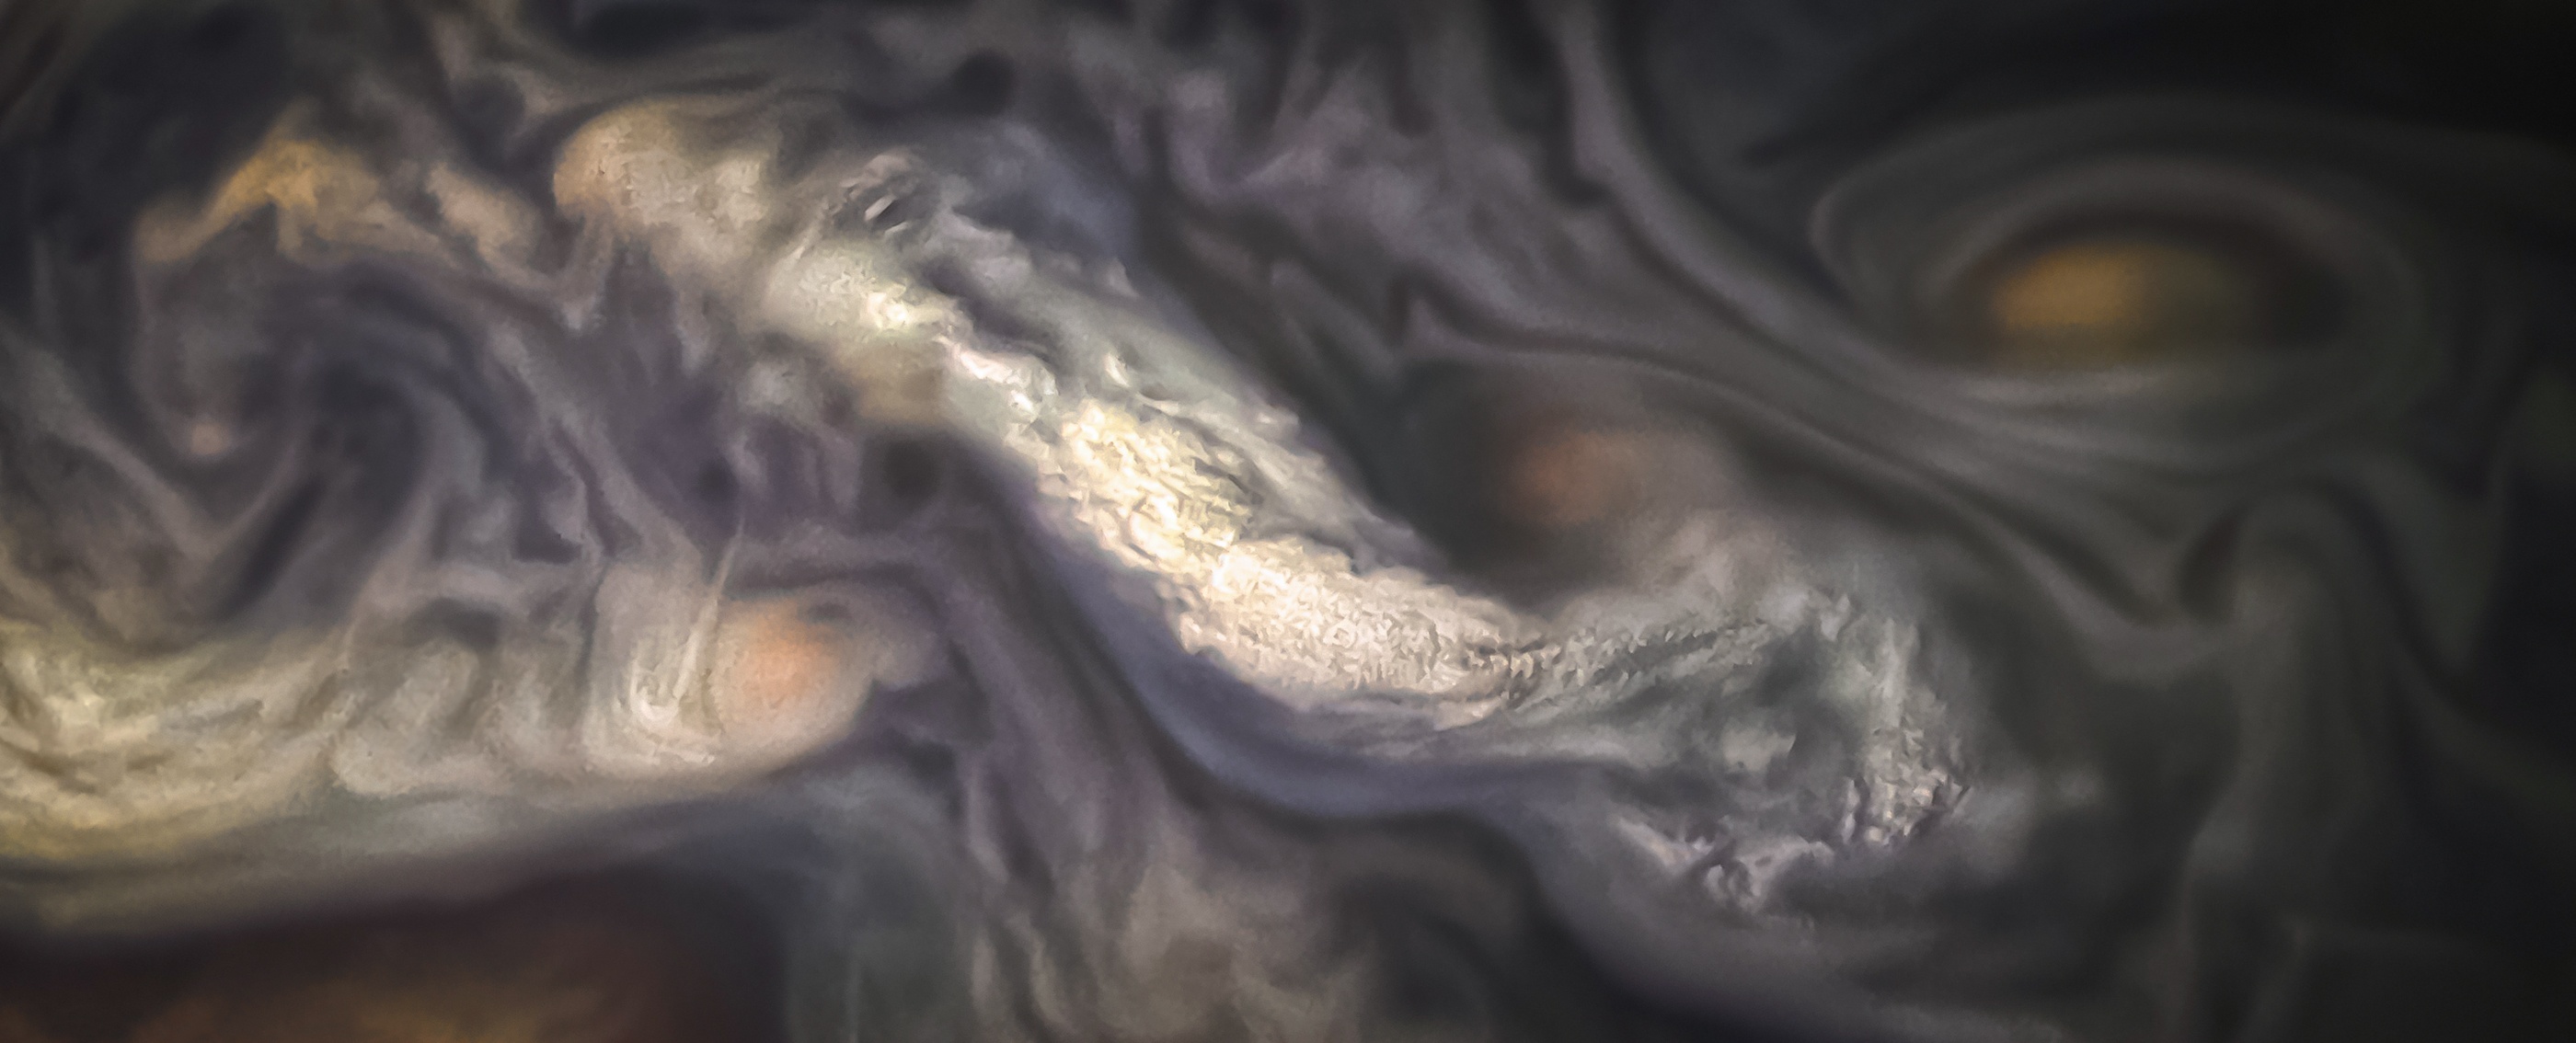 Межпланетная станция  сфотографировала атмосферу Юпитера.Вокруг Света. Украина